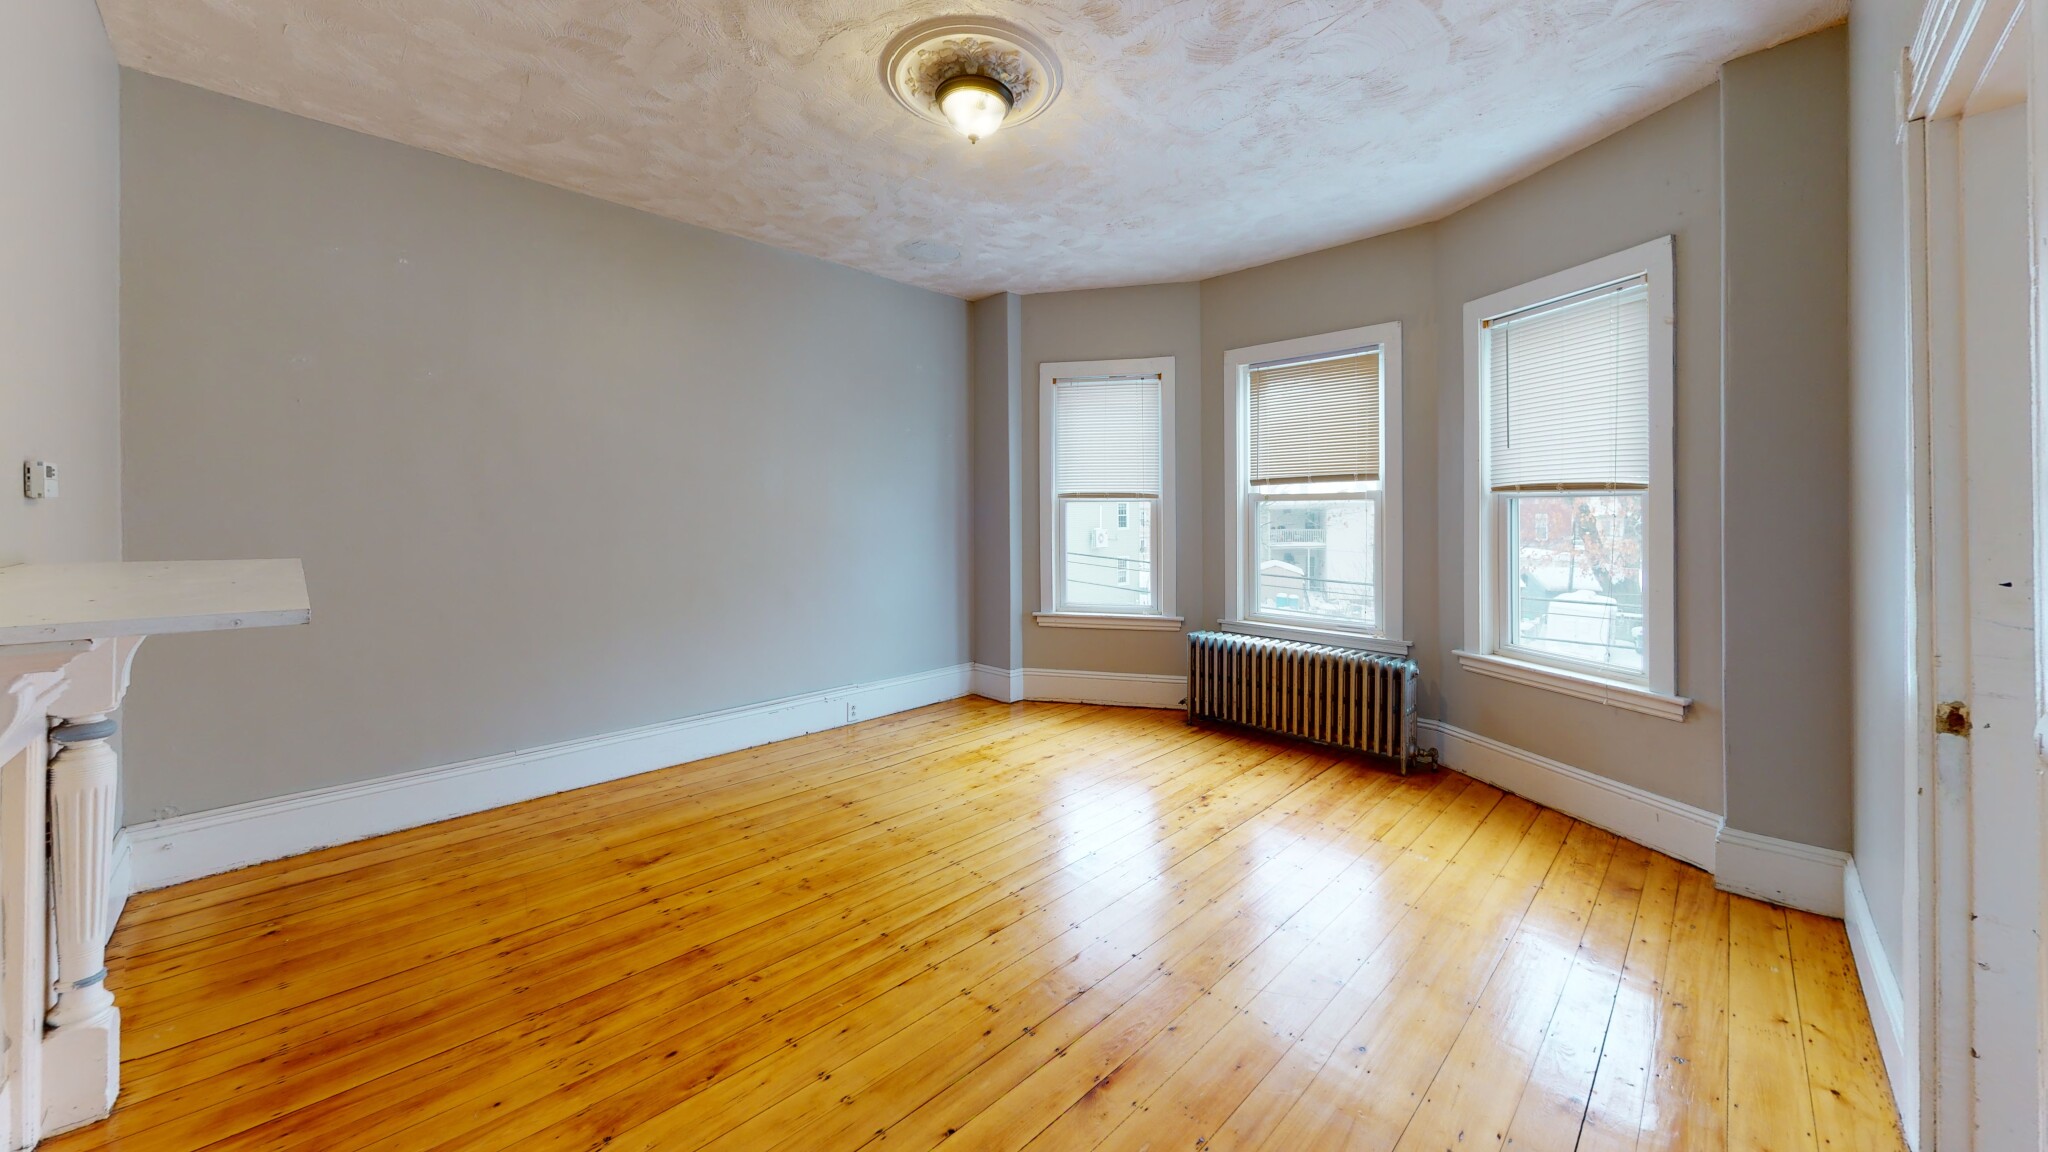 Photos of apartment on Boylston St.,Boston MA 02130